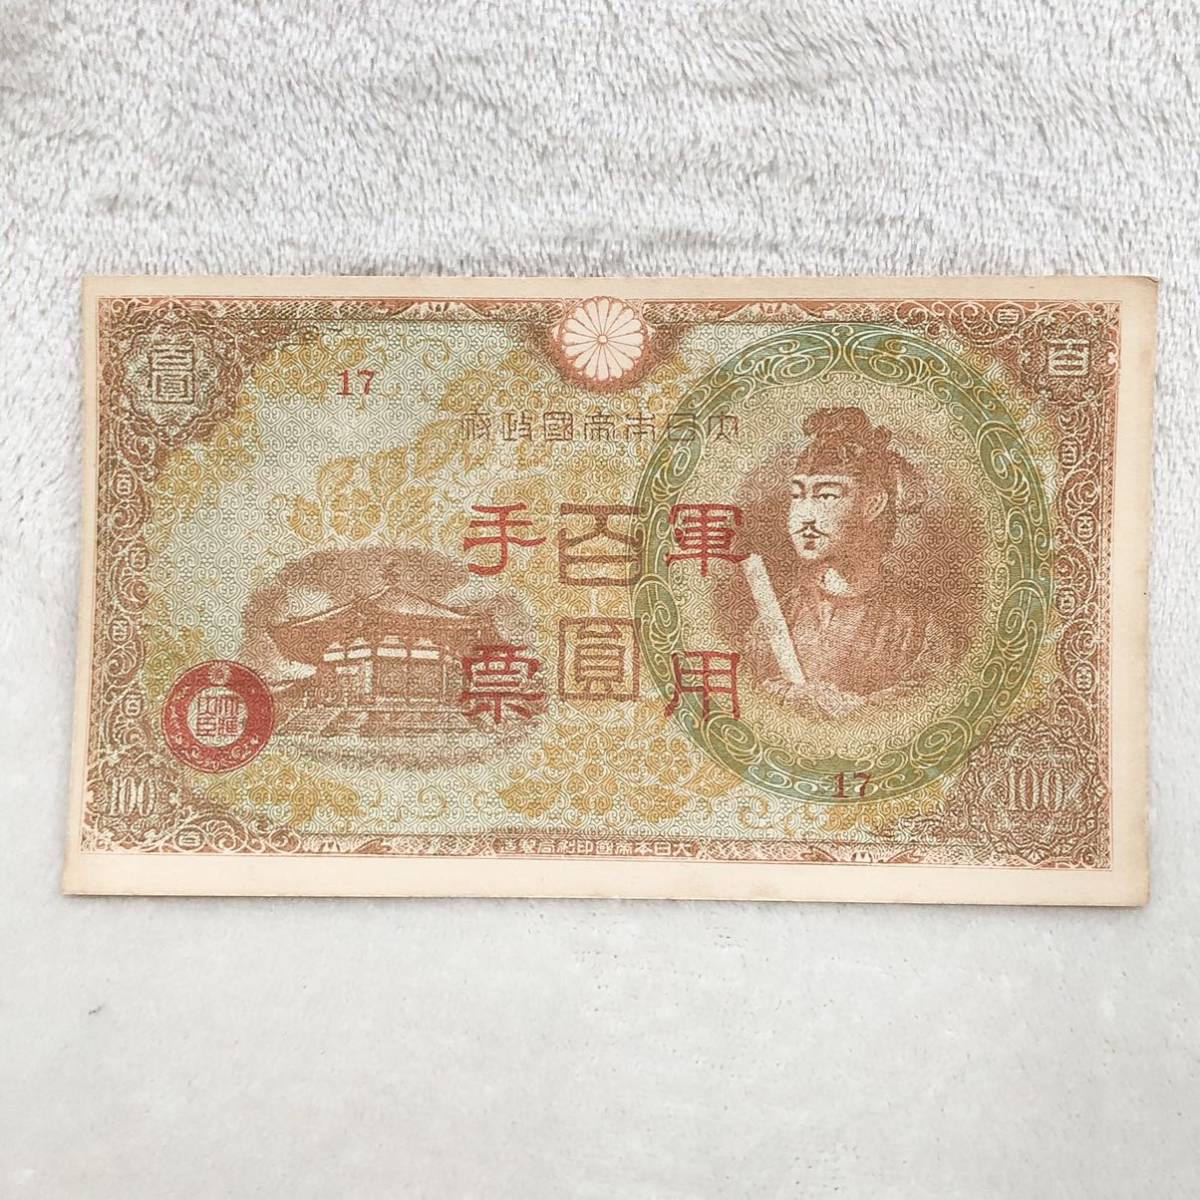 軍用手票 まとめ 122枚 コレクション 紙幣 旧紙幣 聖徳太子 古紙幣 _画像4